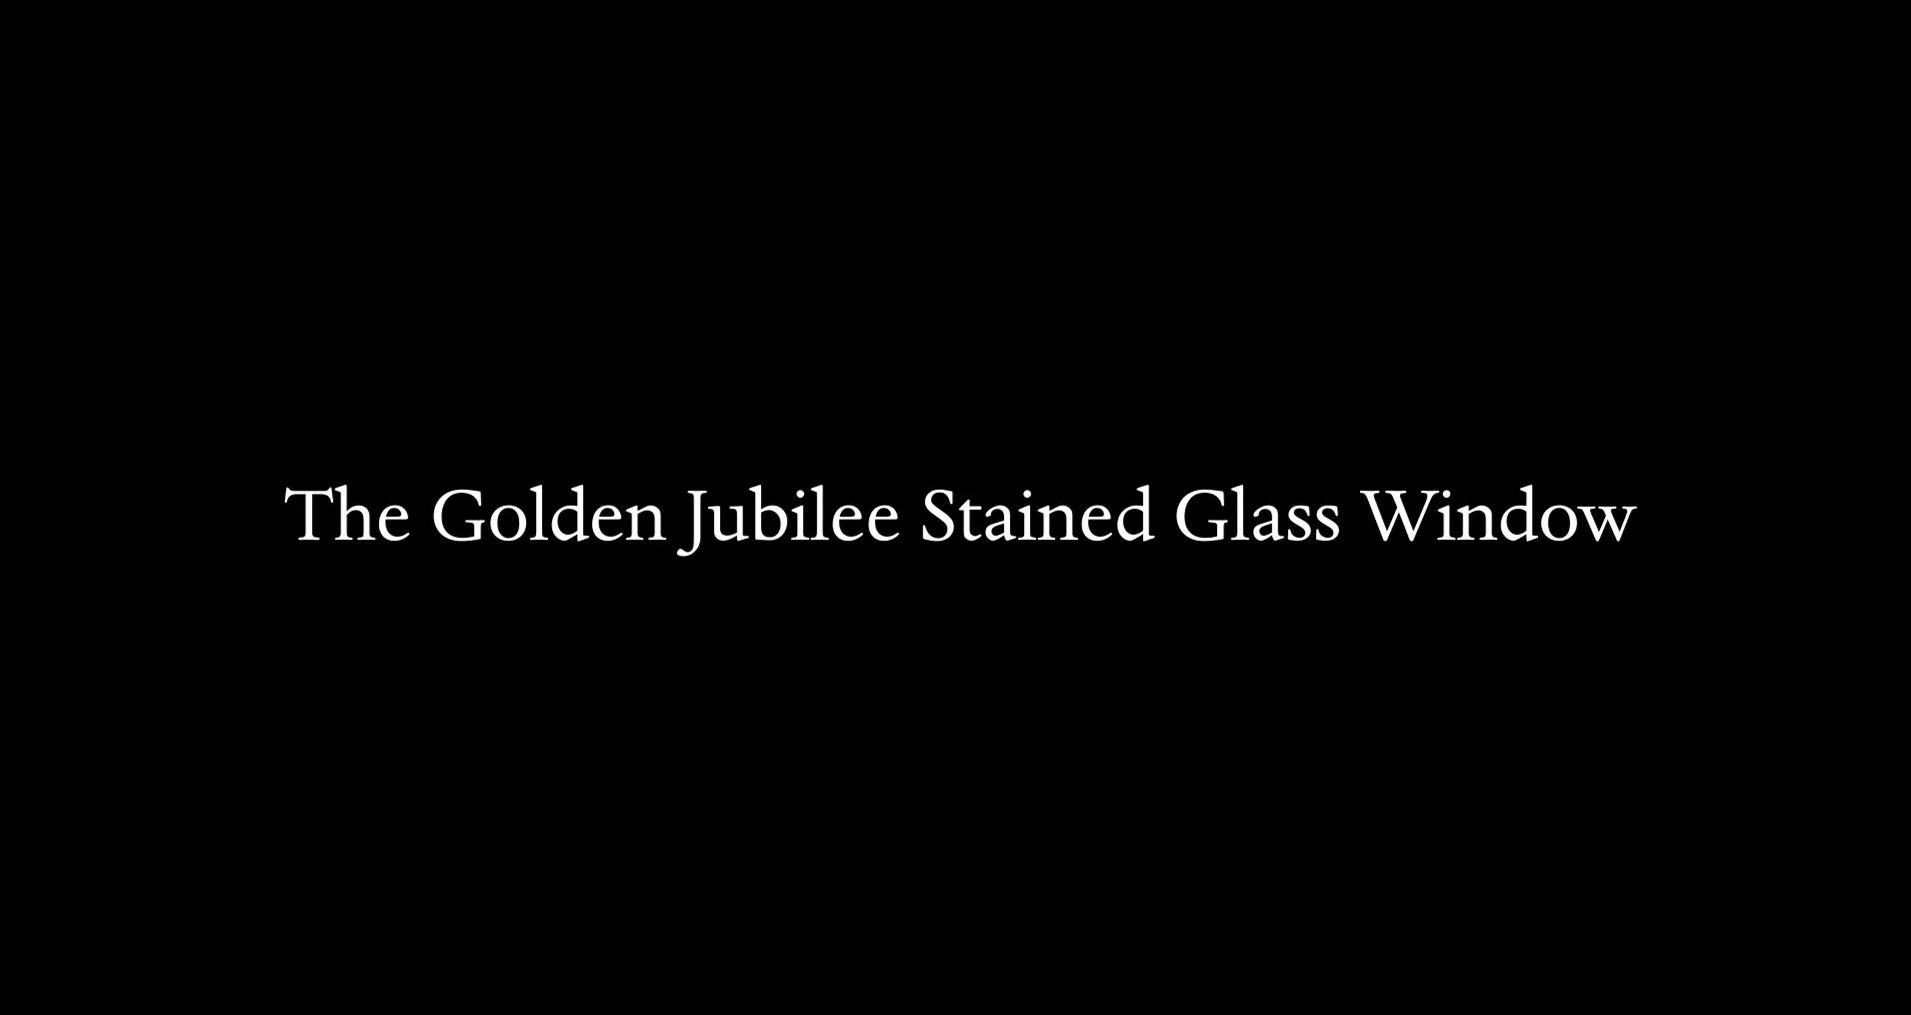 Vignette - Golden Jubilee